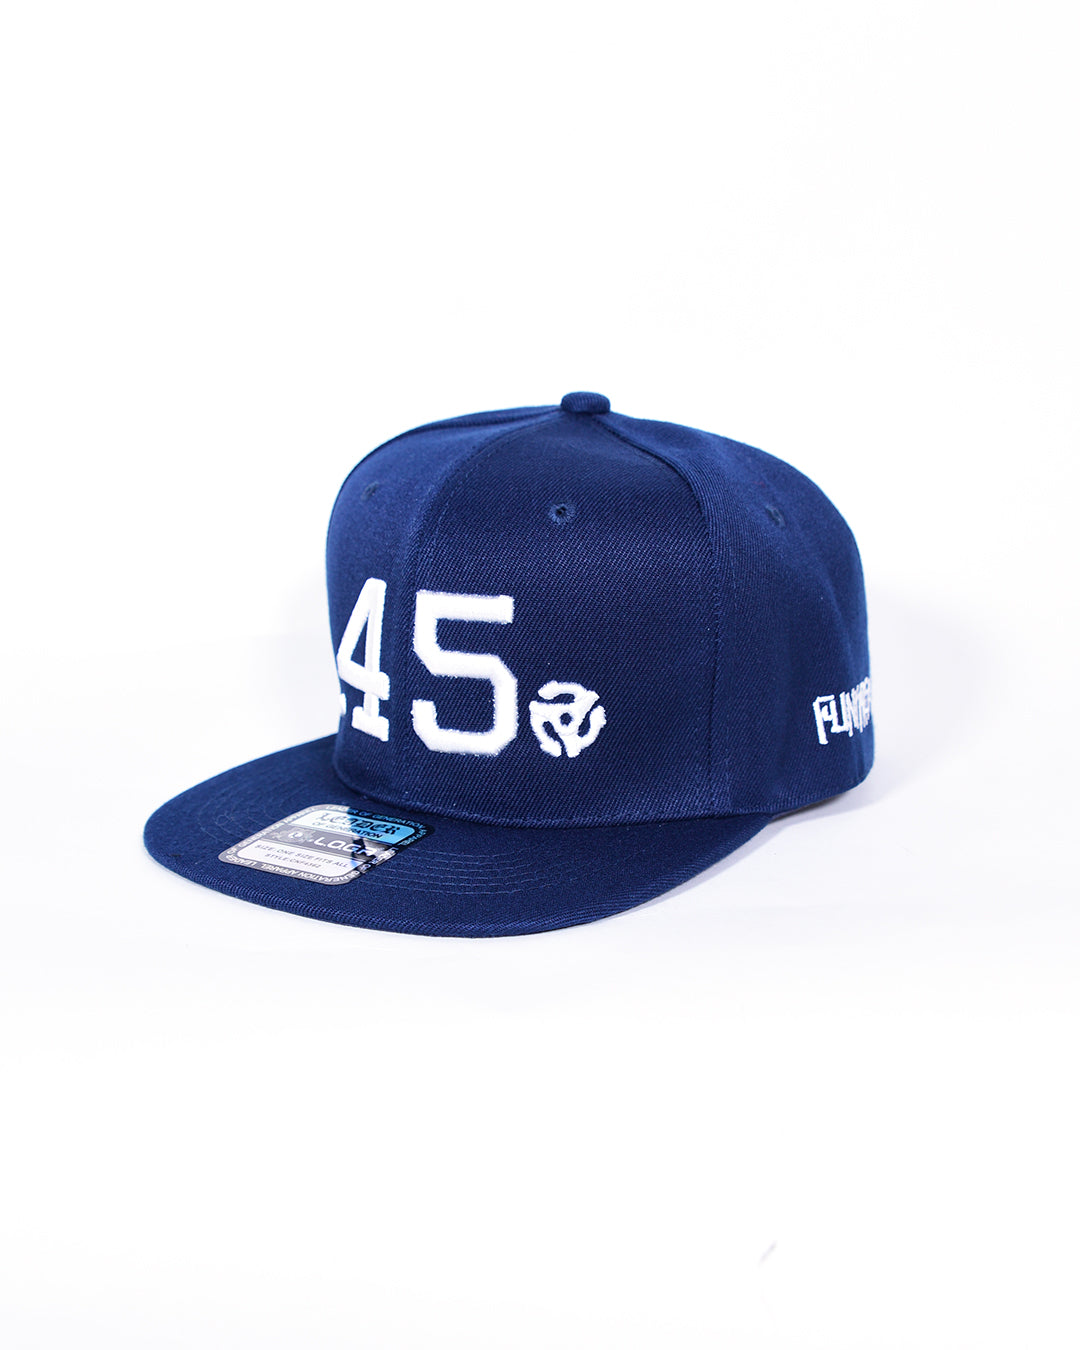 FUNK FREAKS 45’s SB CAP(NAVY BLUE)